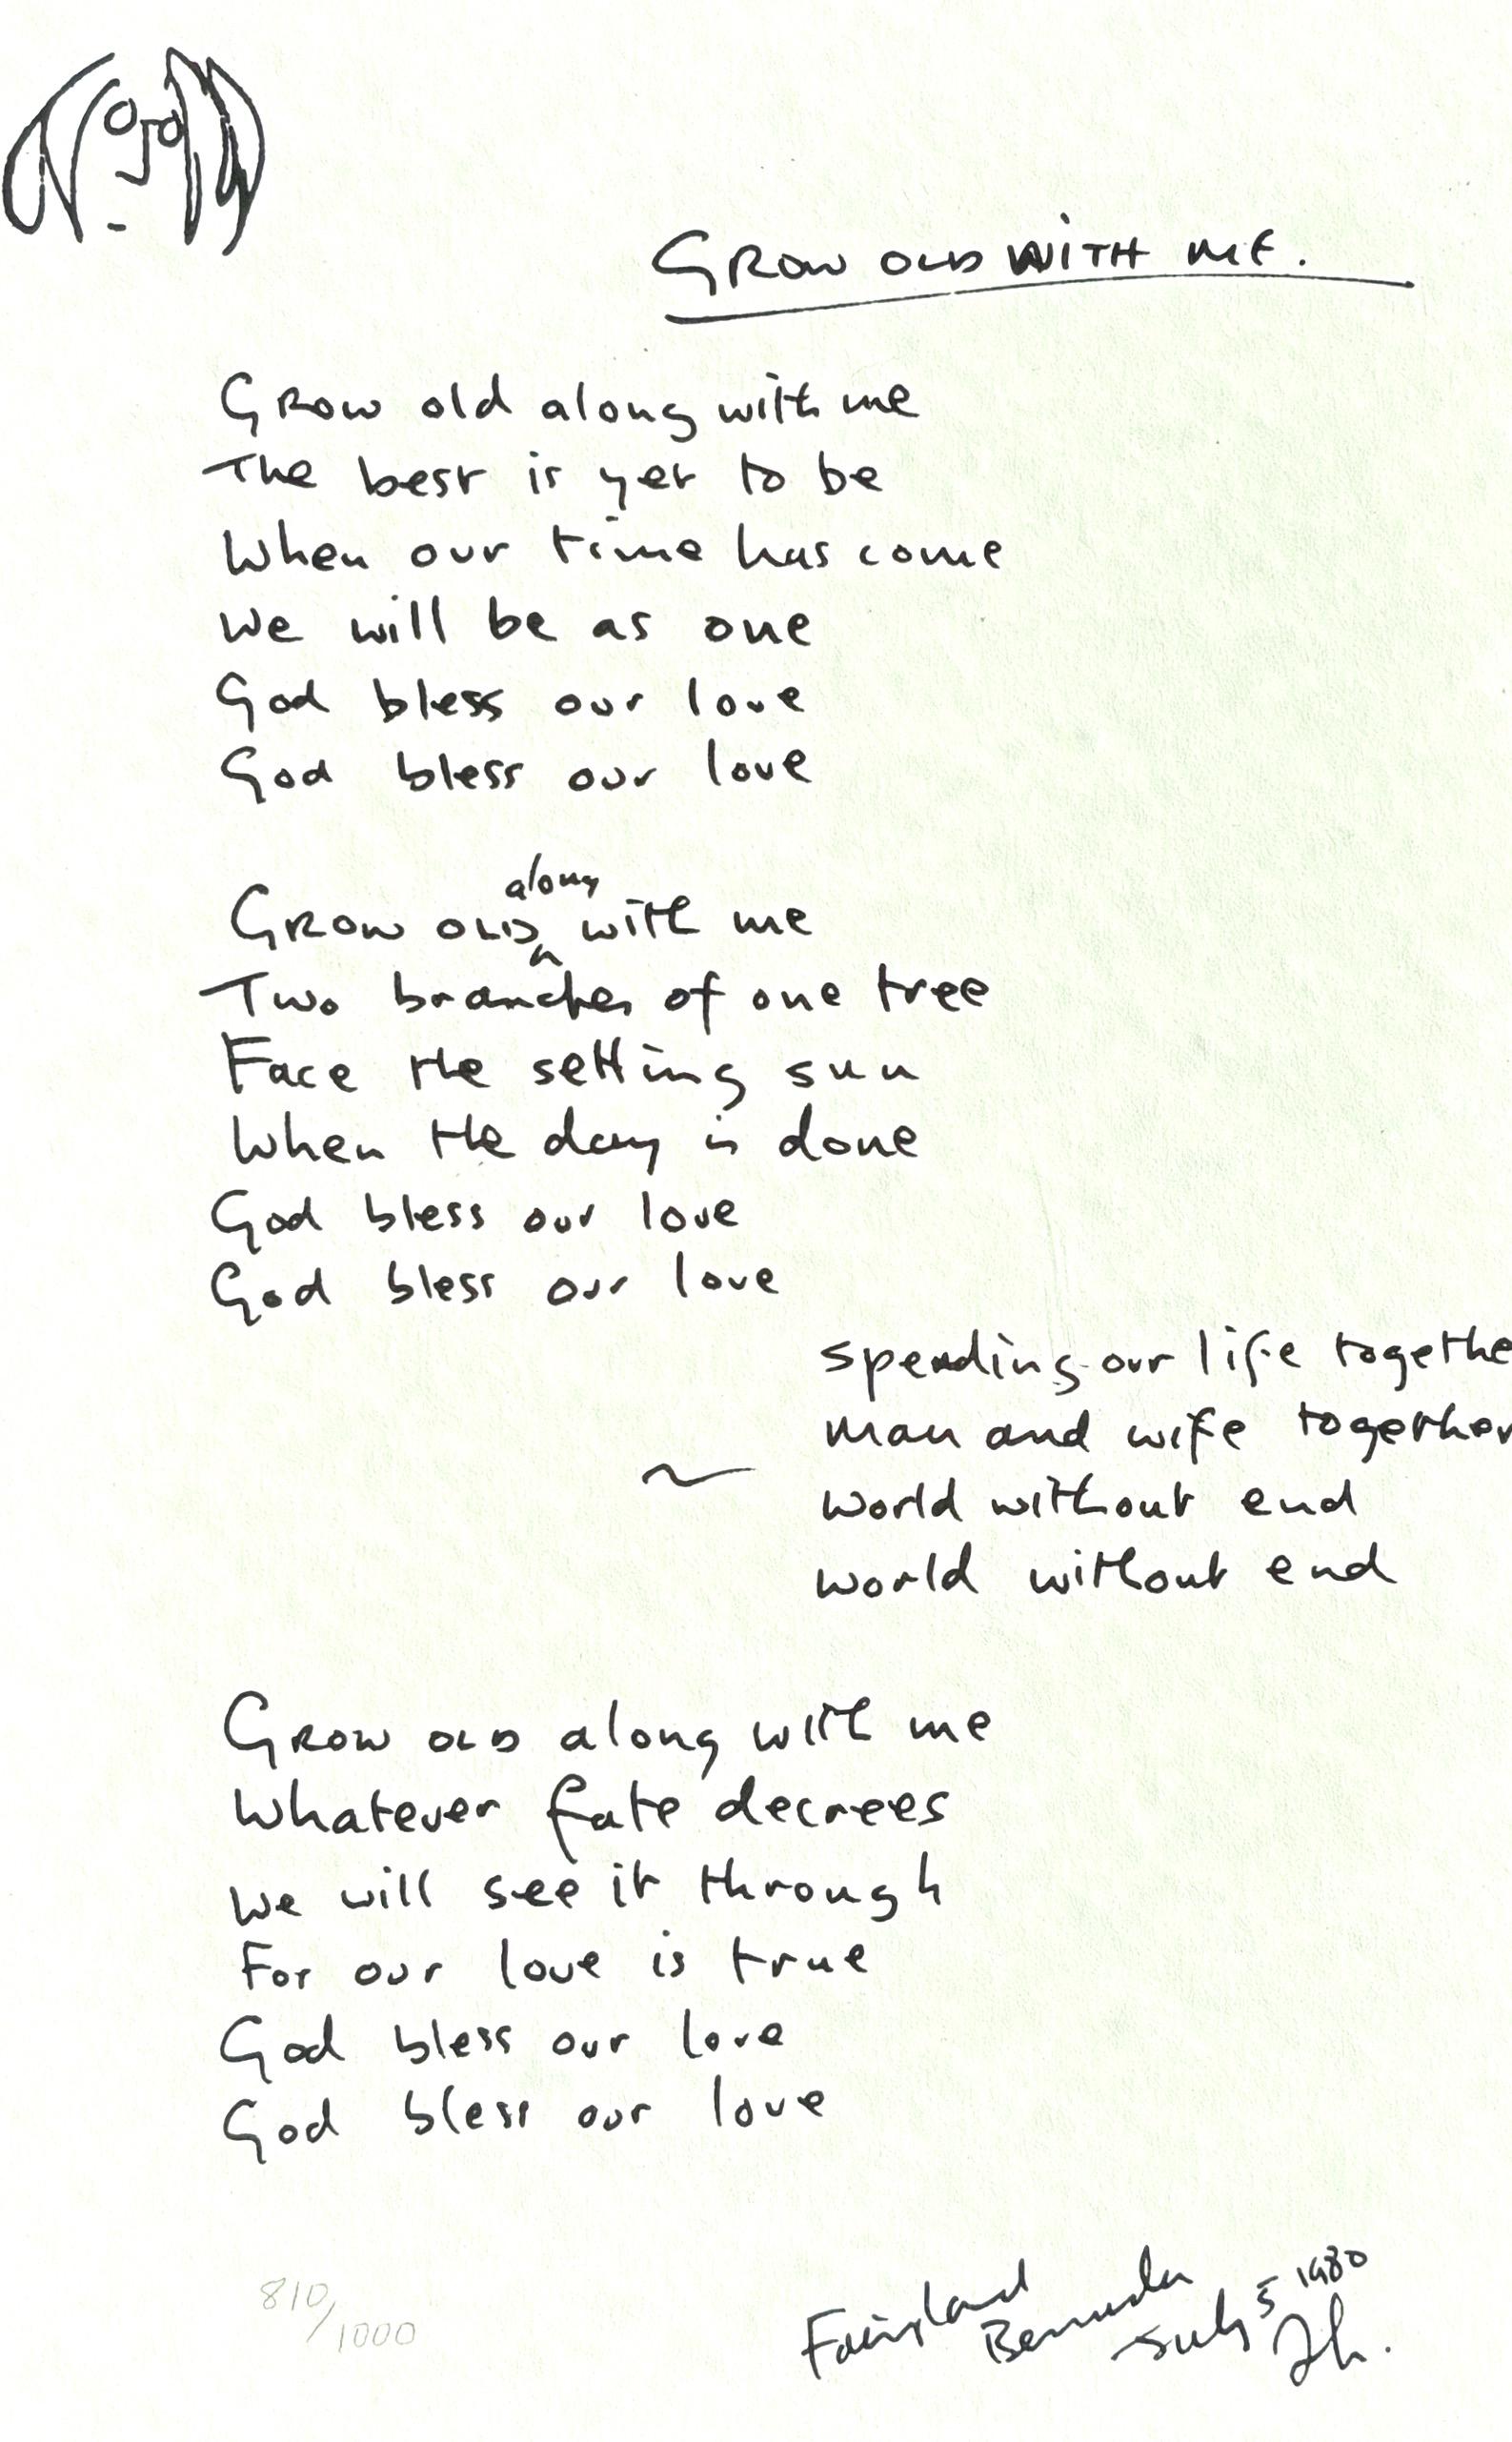  Seltene Serigraphie in limitierter Auflage von John Lennons handgeschriebenem Text für den Song 